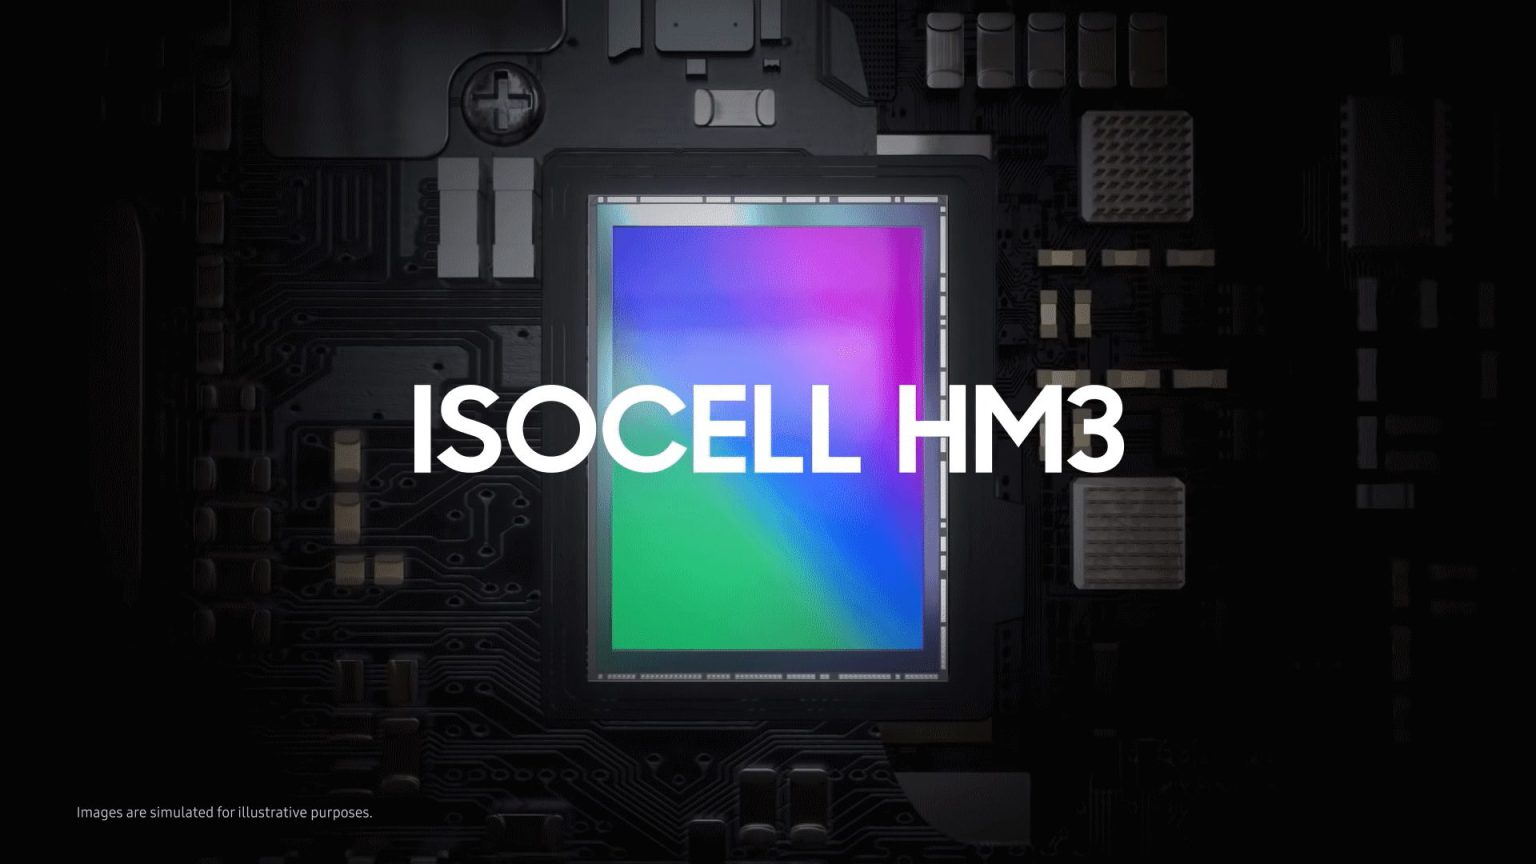 Samsung luce músculo con el ISOCELL HM3 en este nuevo vídeo que destaca sus bondades realizando fotografías.